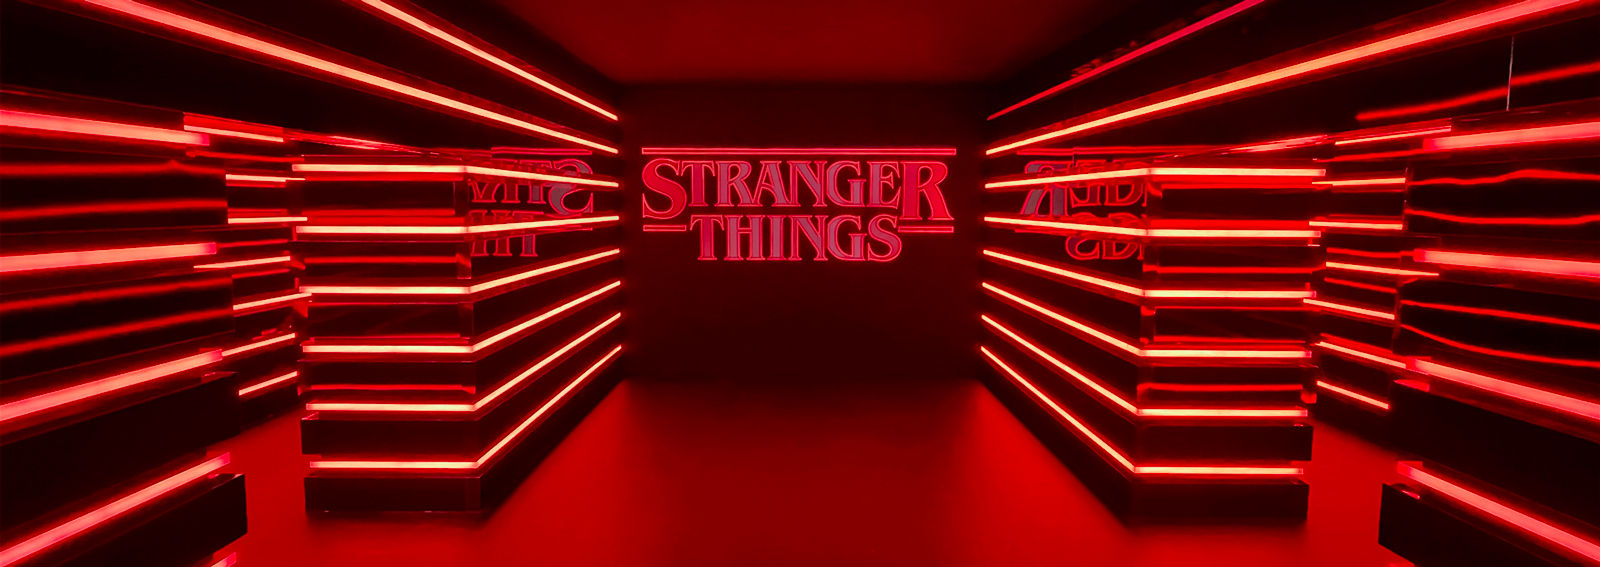 stranger-things-pop-up-milano